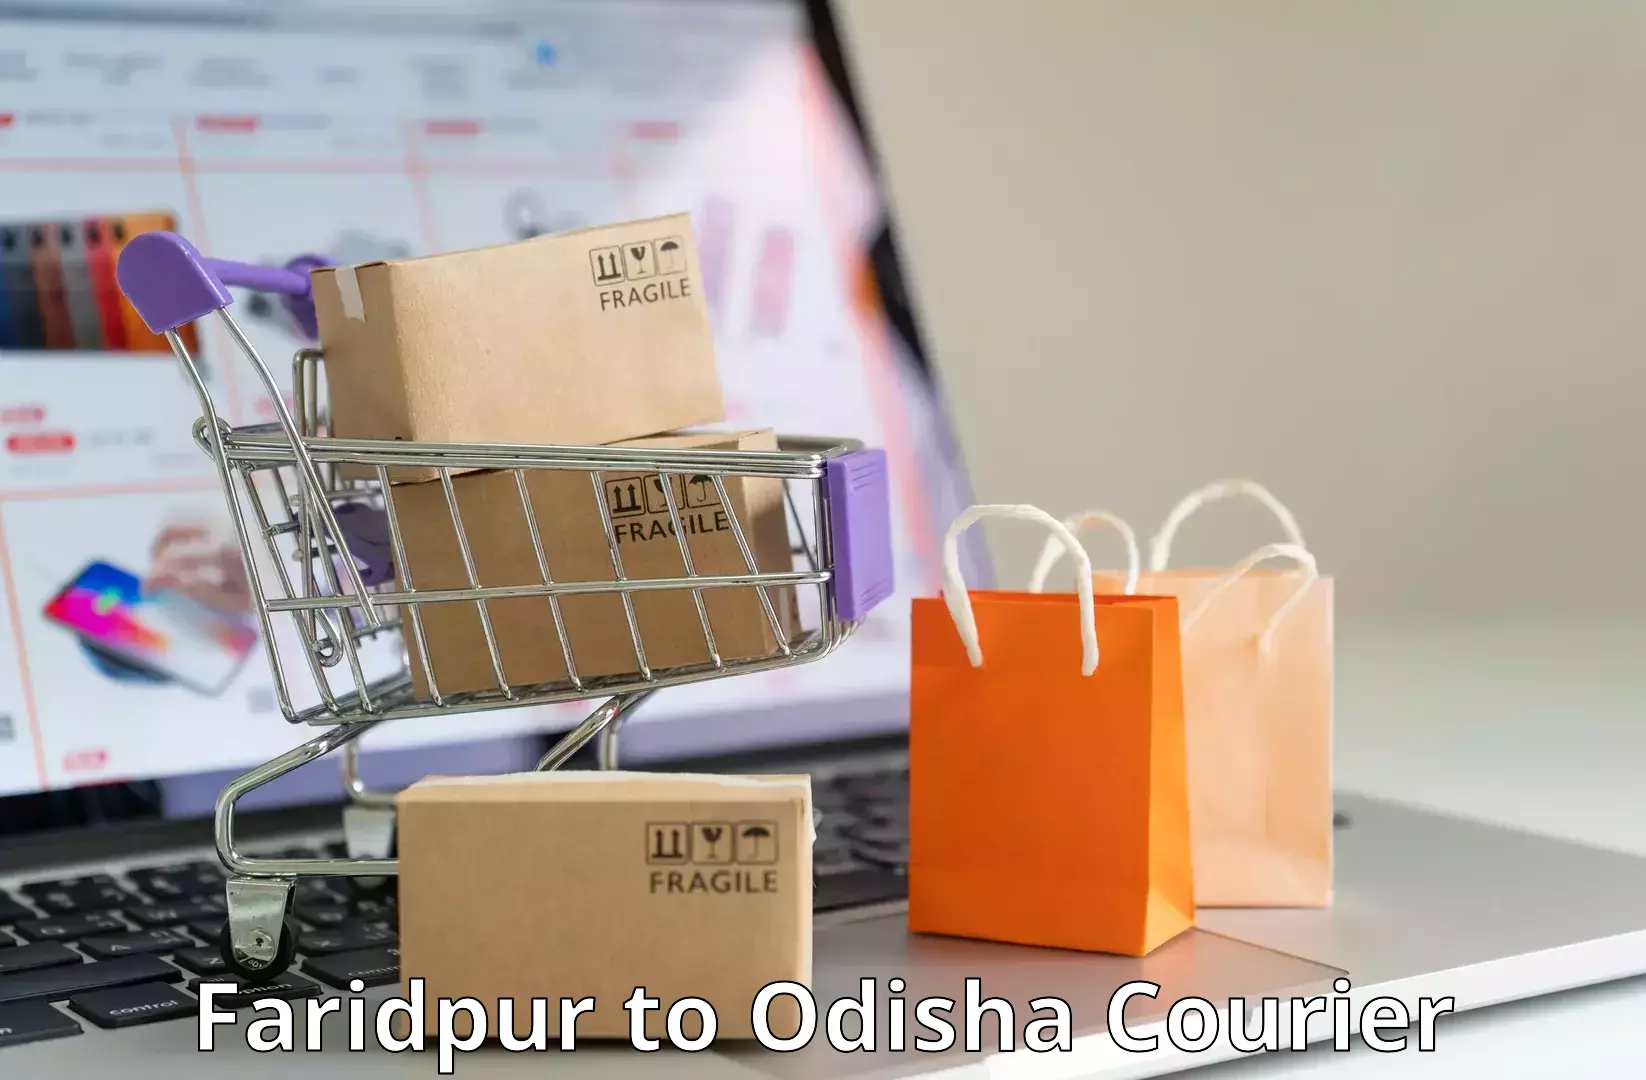 Fast delivery service Faridpur to Odisha